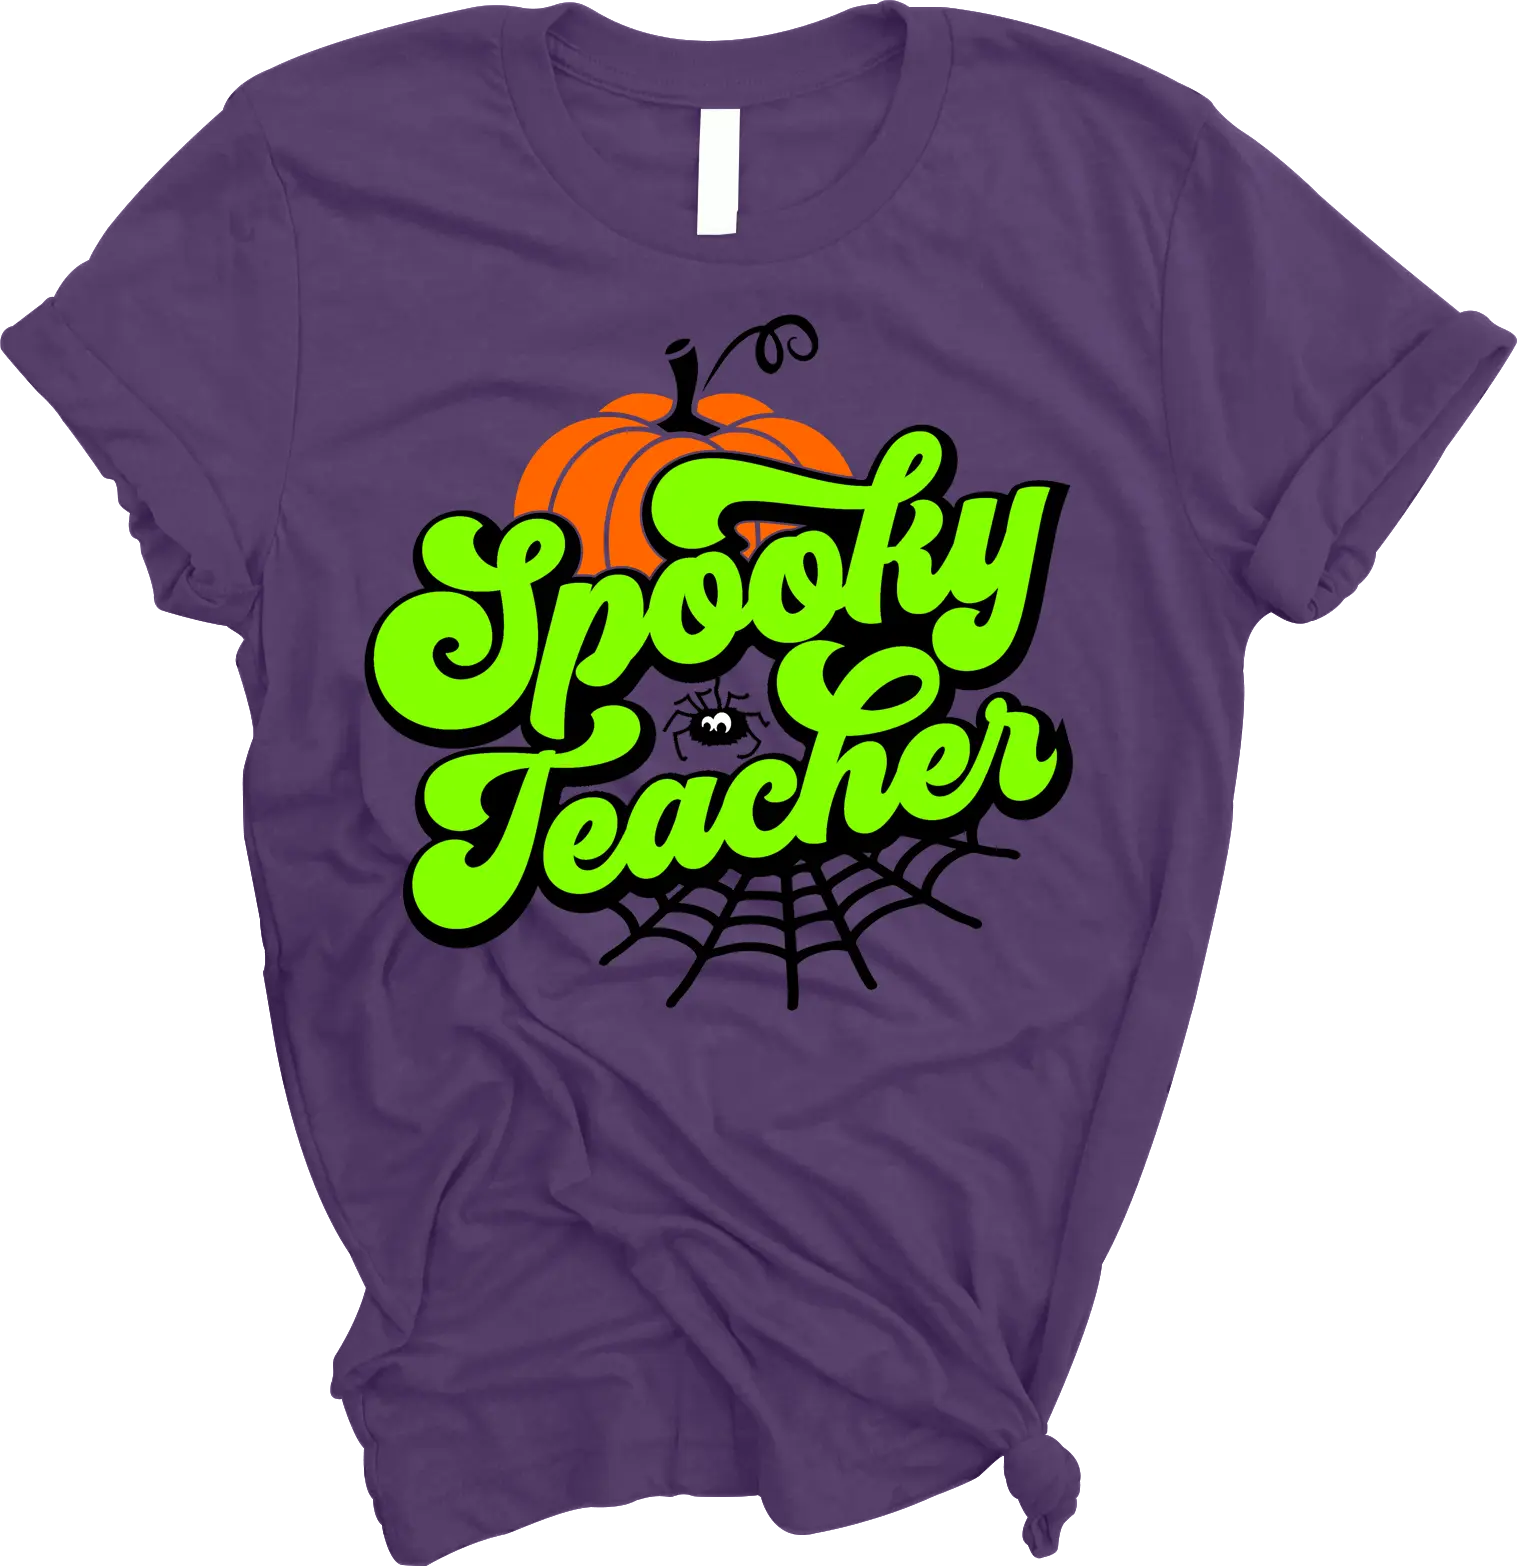 “Spooky Teacher” Tee